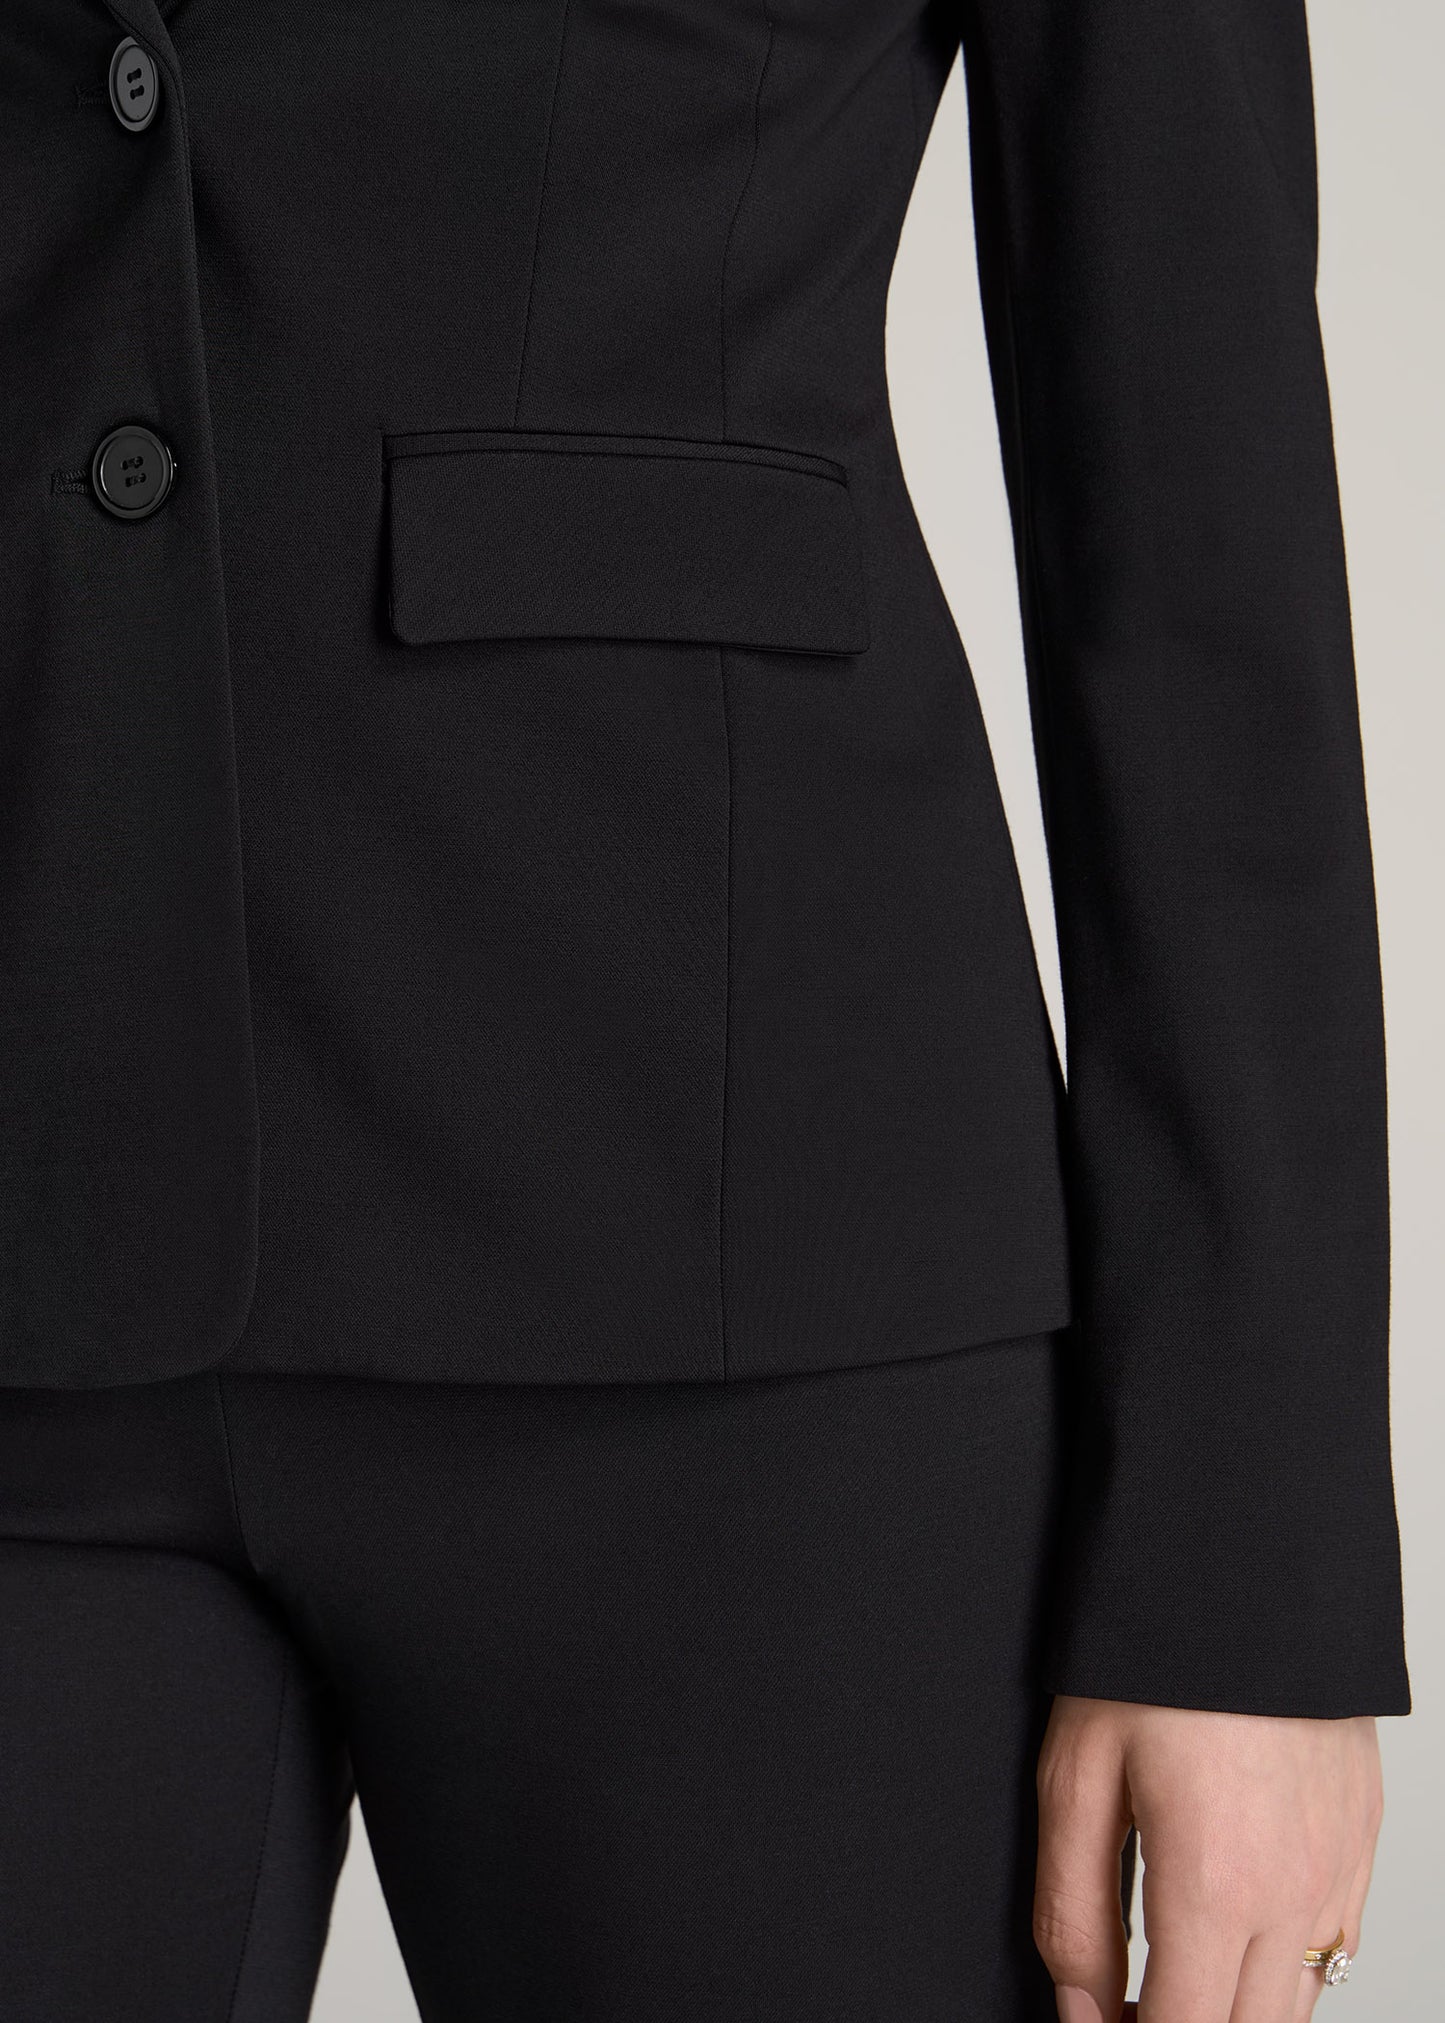 American-Tall-Women-Two-Button-Blazer-Black-detail